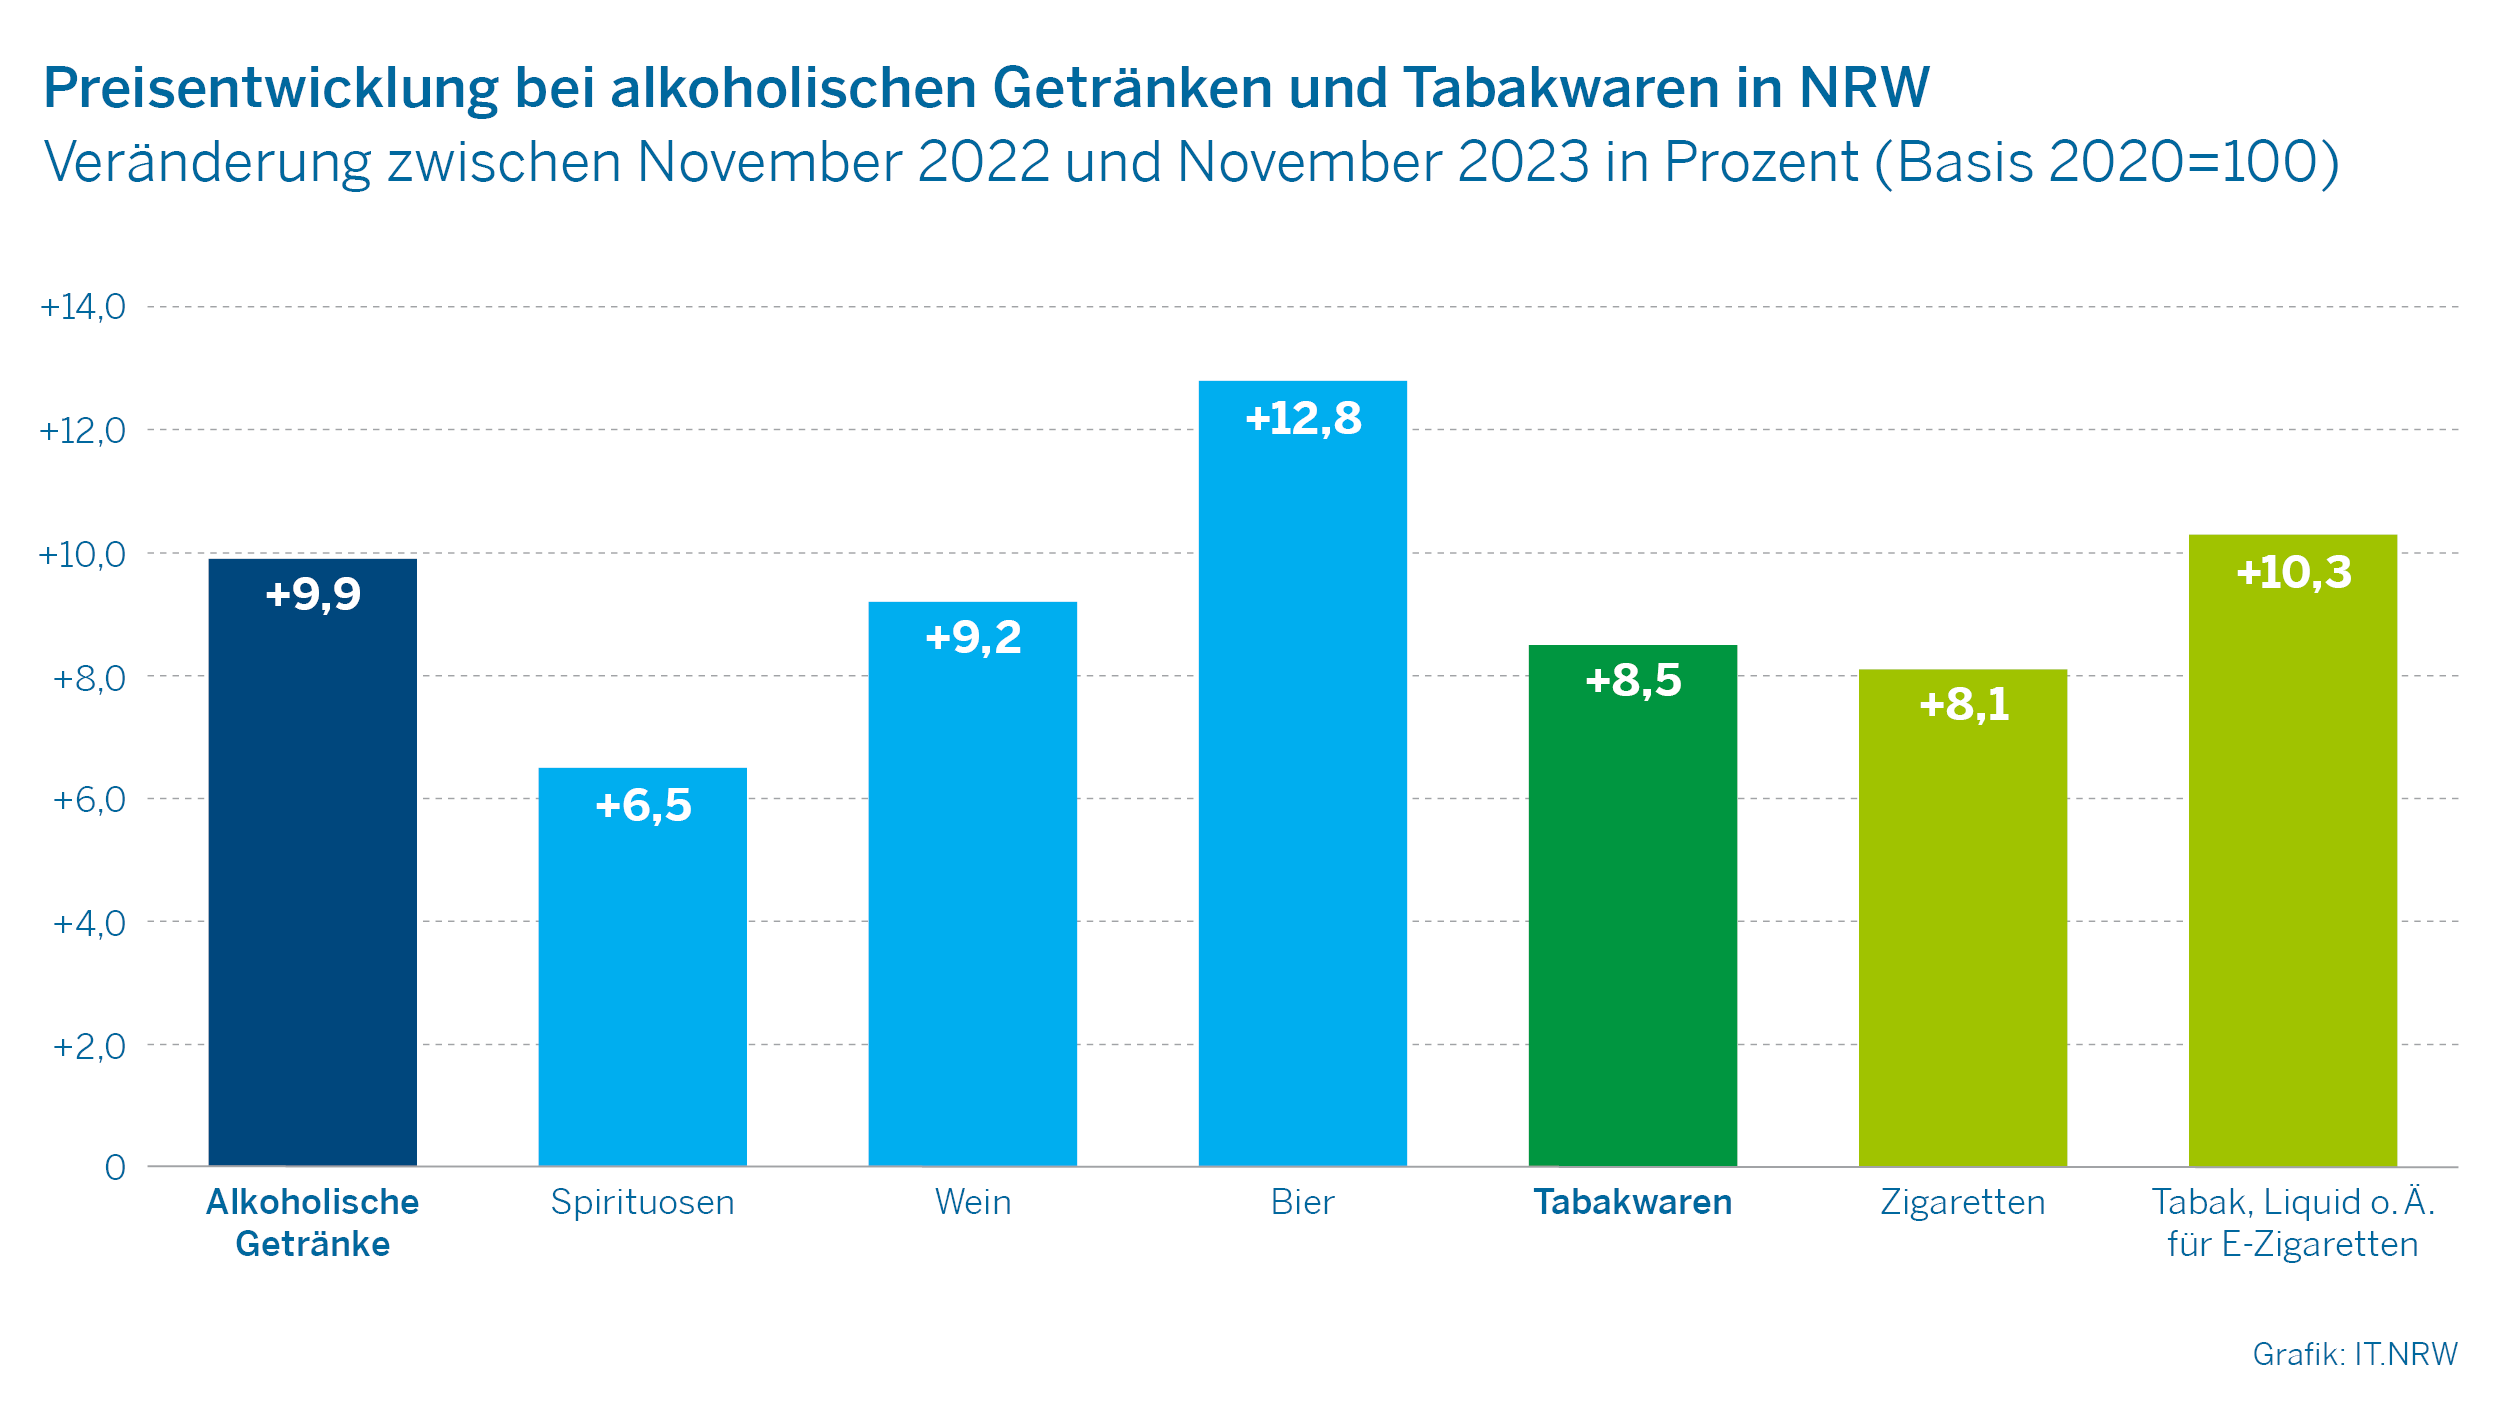 Preisentwicklung bei alkoholischen Getränken und Tabakwaren in NRW